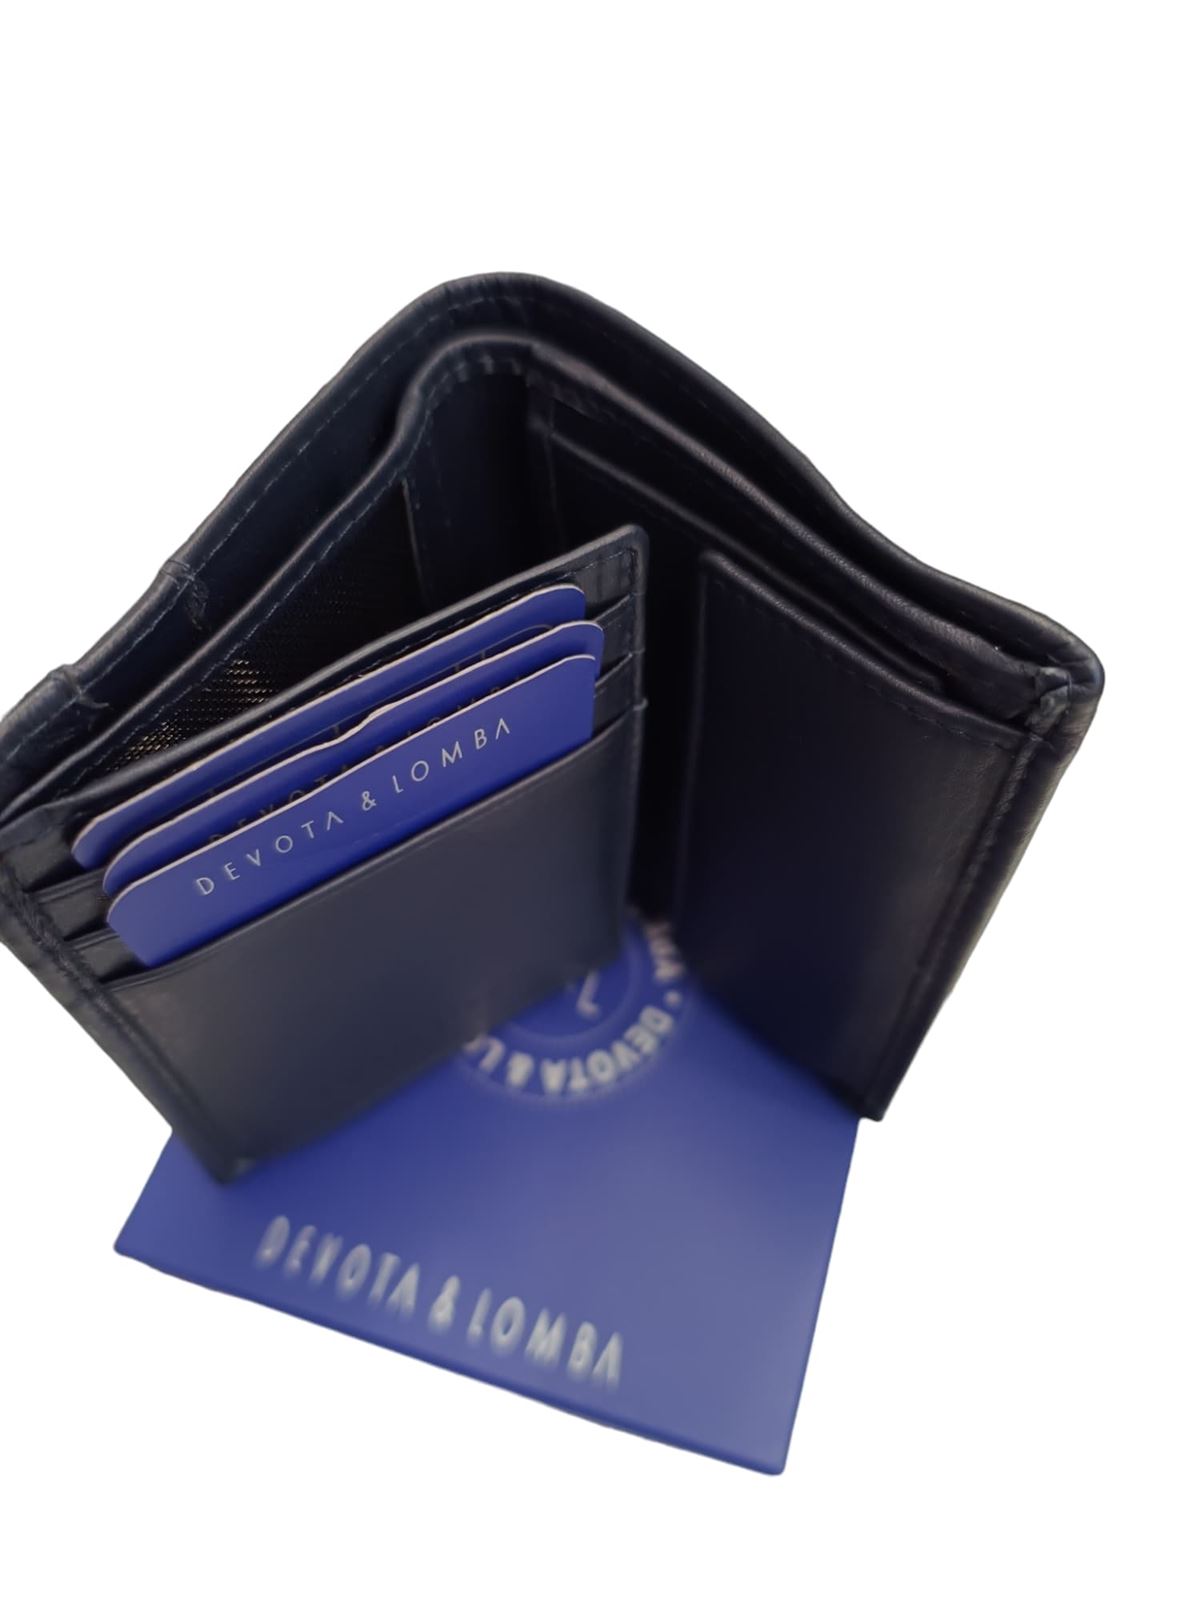 Billetera de hombre azul en piel con cierre de goma y monedero - Imagen 2